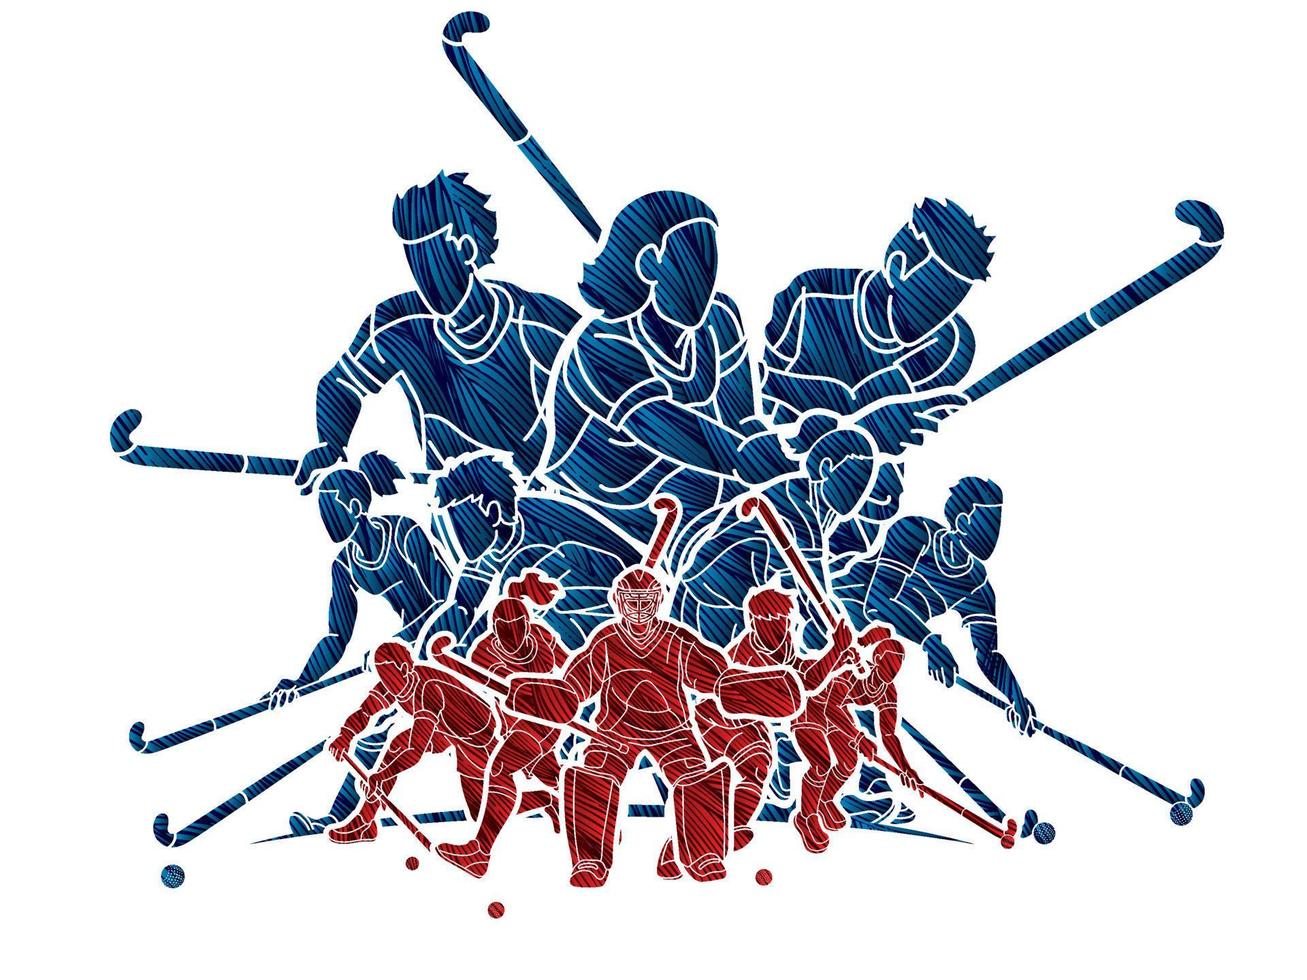 männliche und weibliche spieler der feldhockey-sportmannschaft handeln gemeinsam vektor